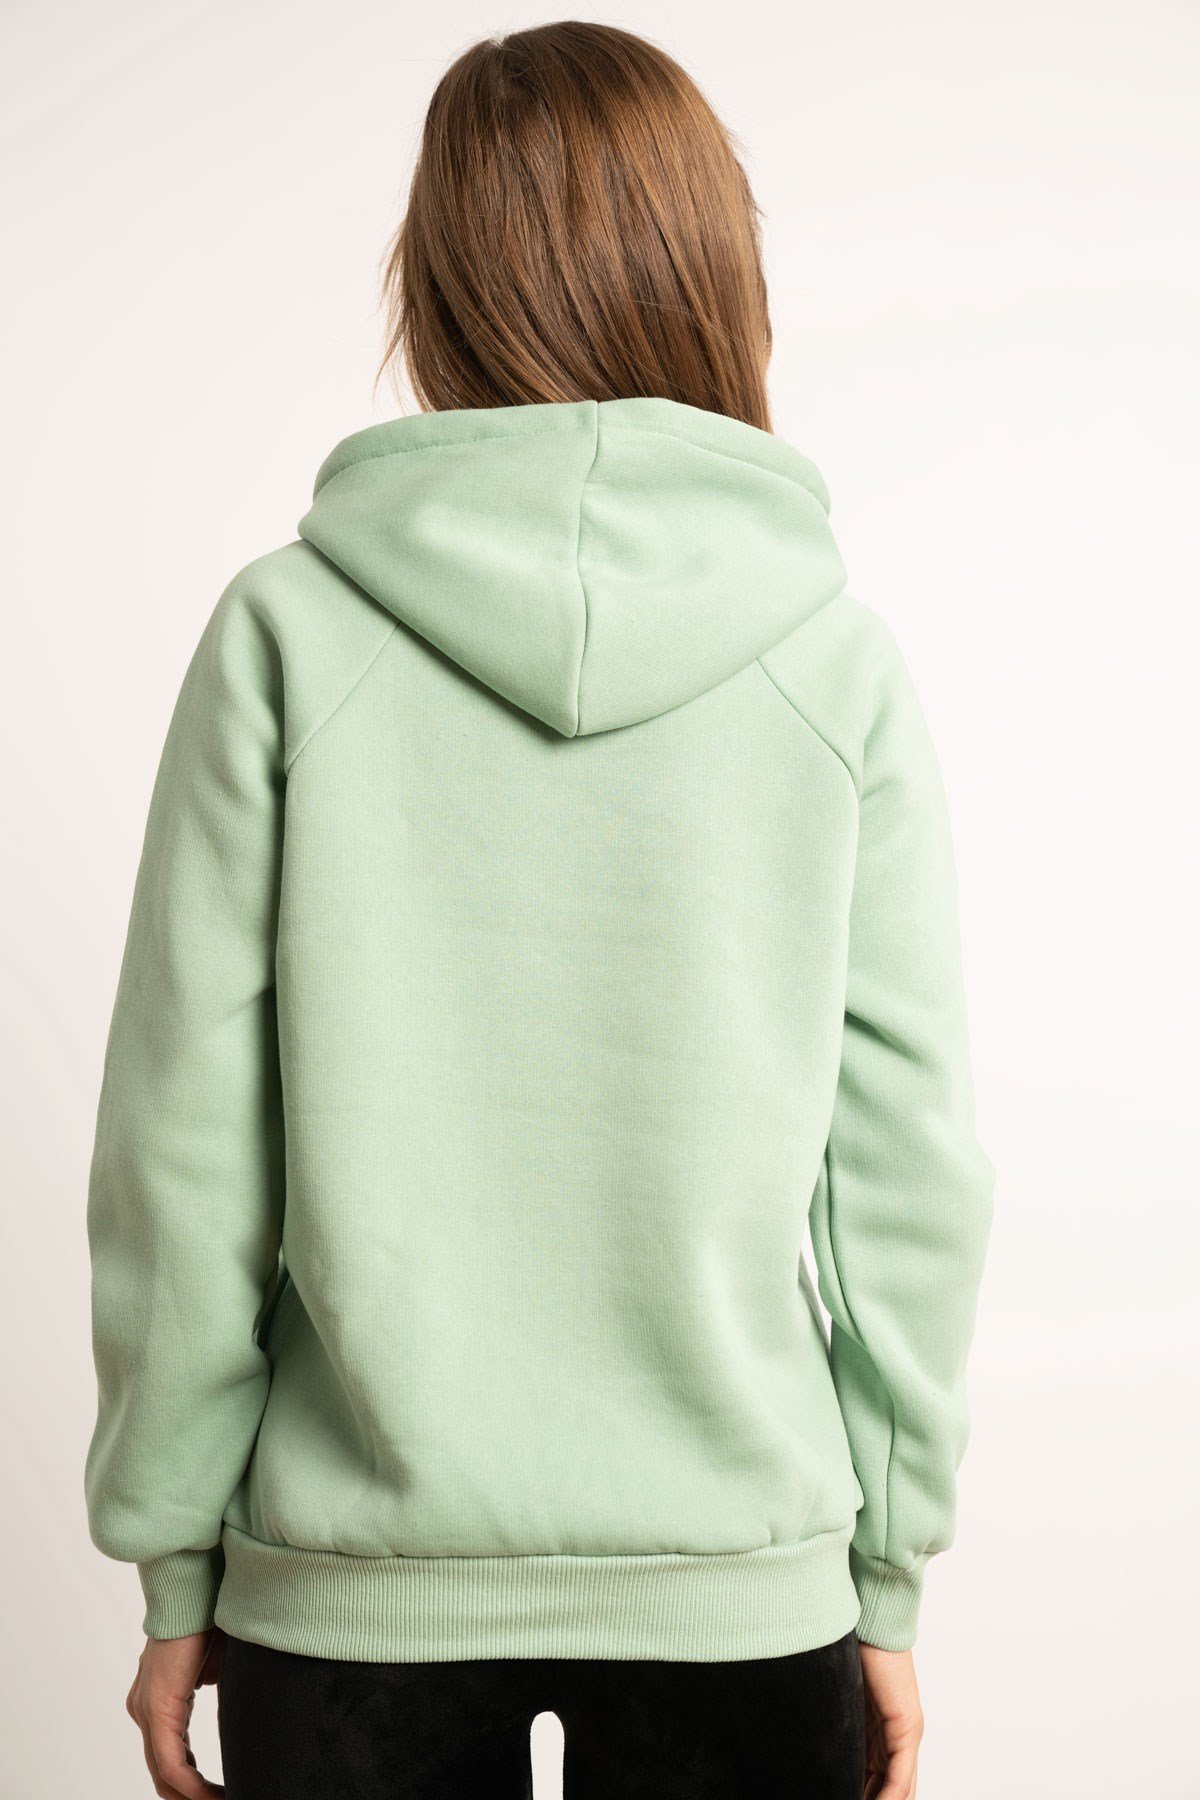 Kapşonlu Sweatshirt Mint Yeşil | Hadise Kadın Giyim